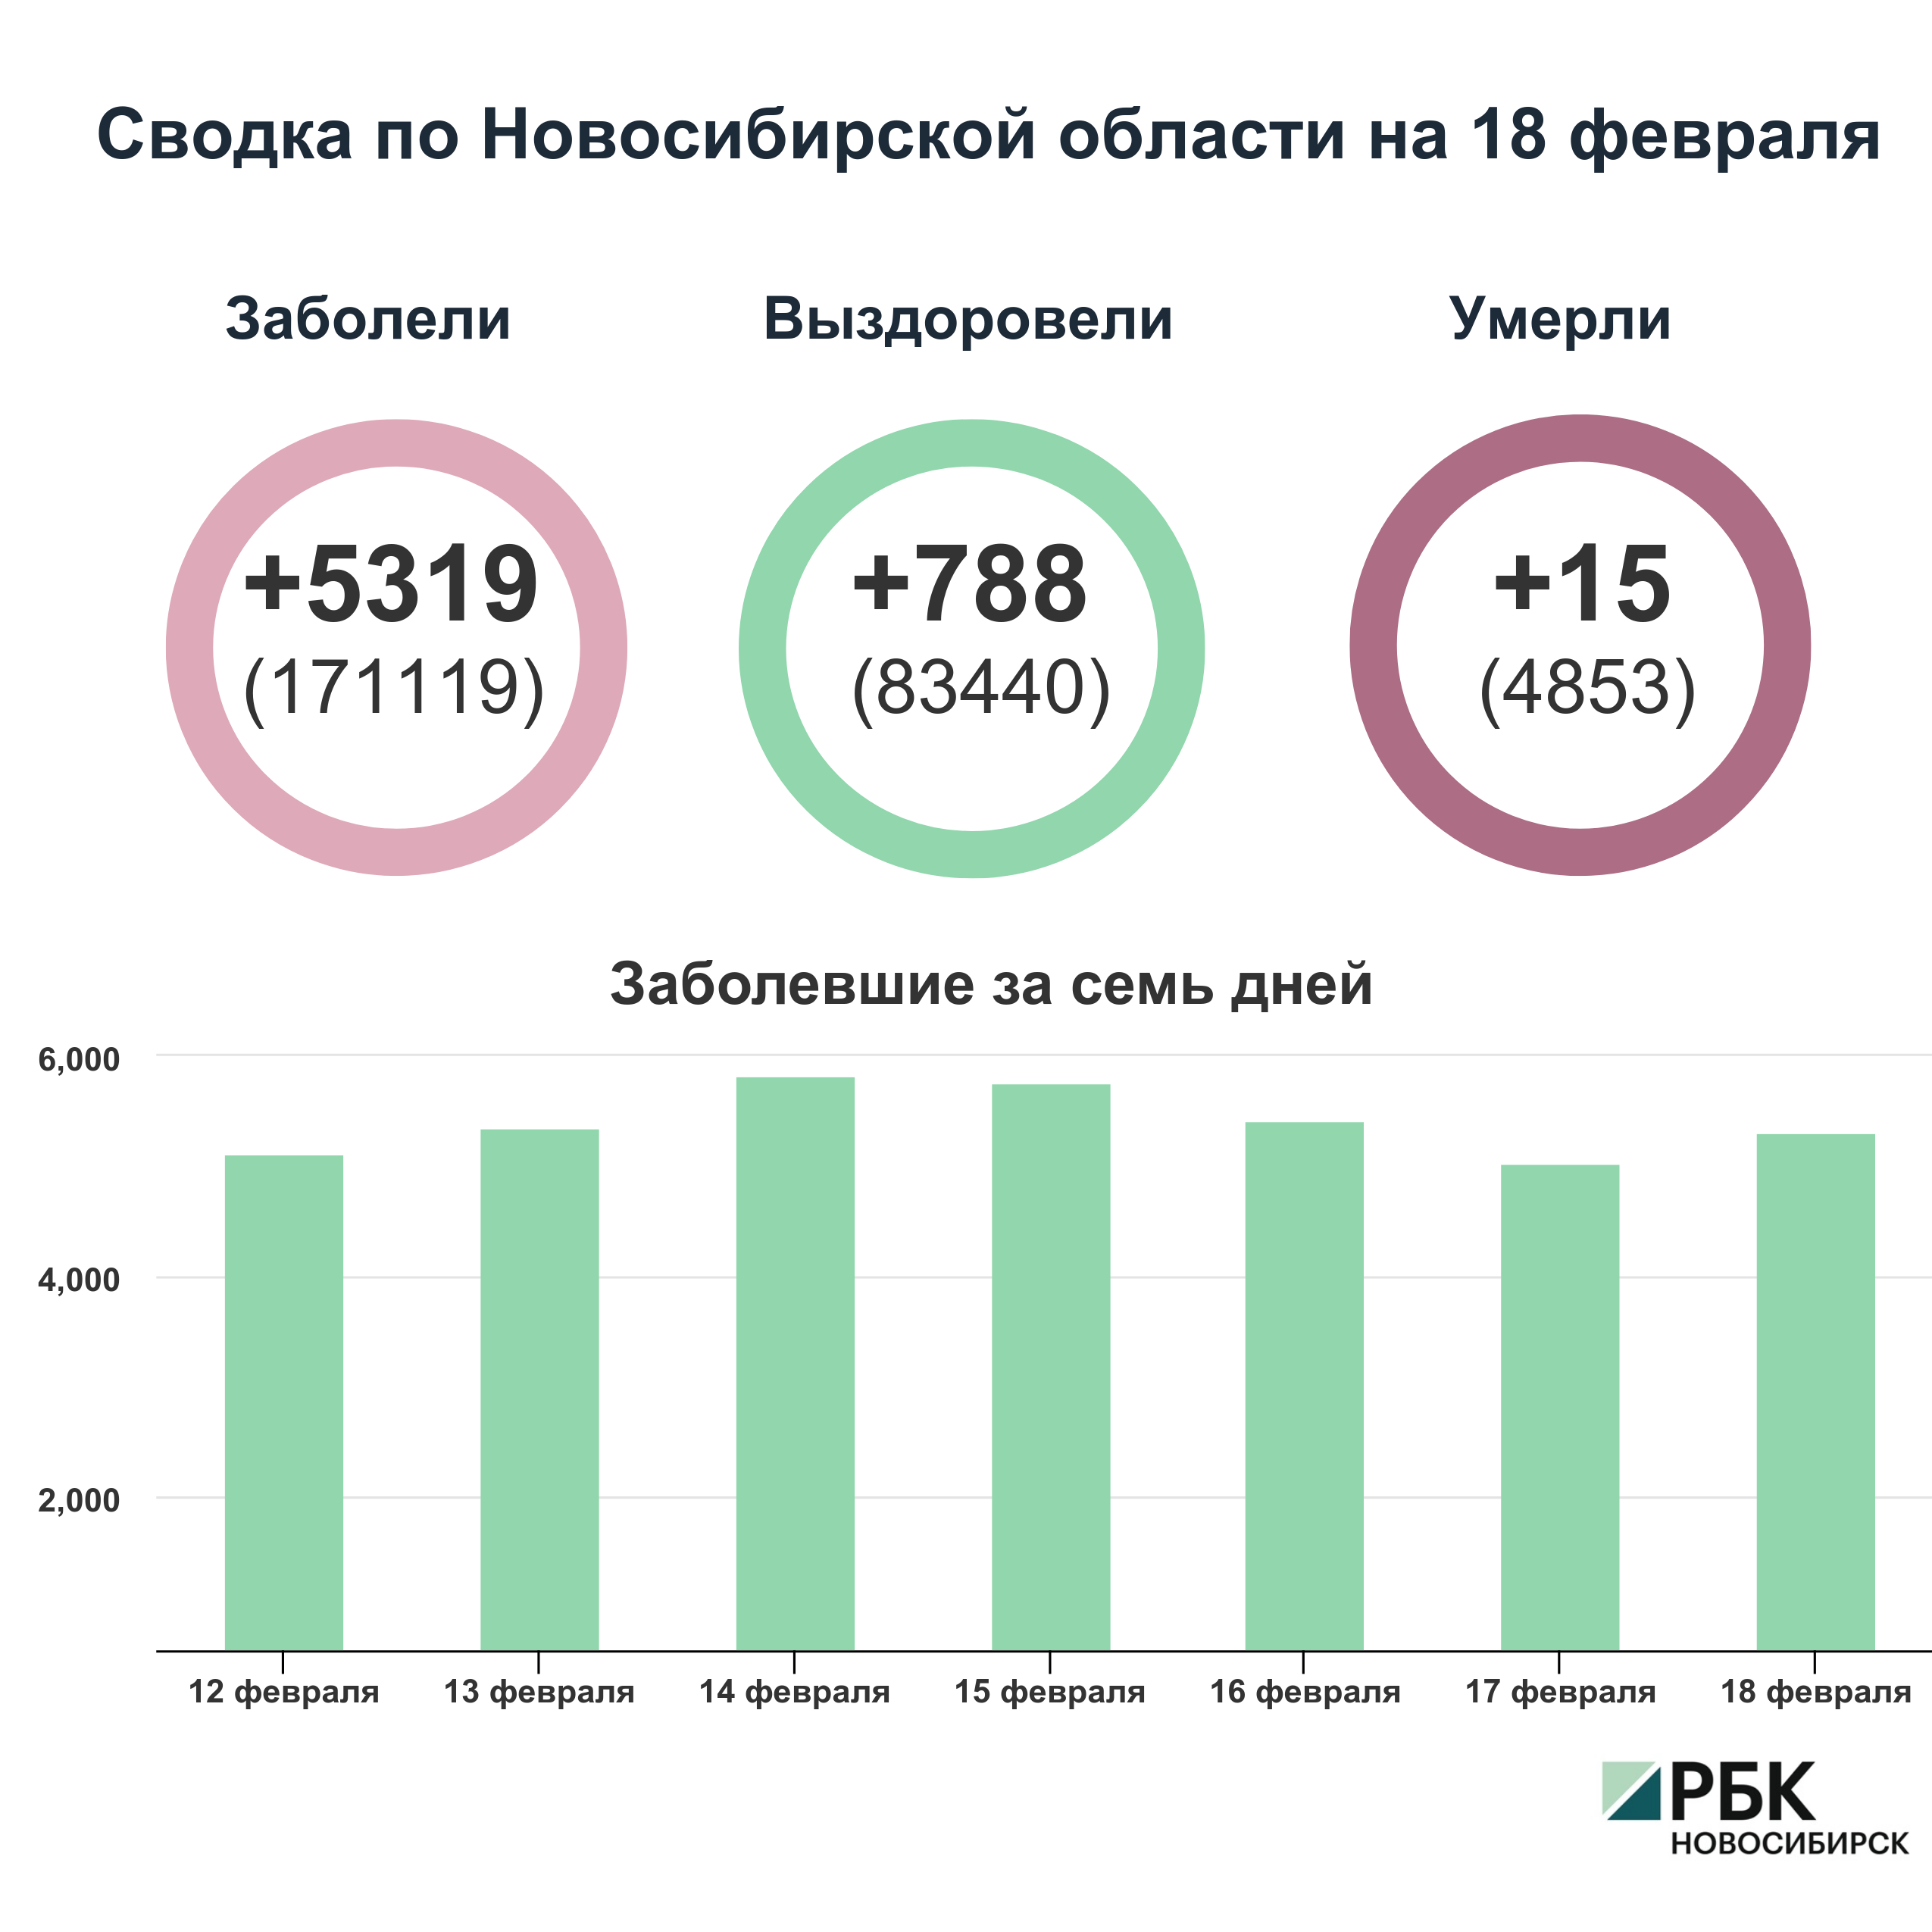 Коронавирус в Новосибирске: сводка на 18 февраля